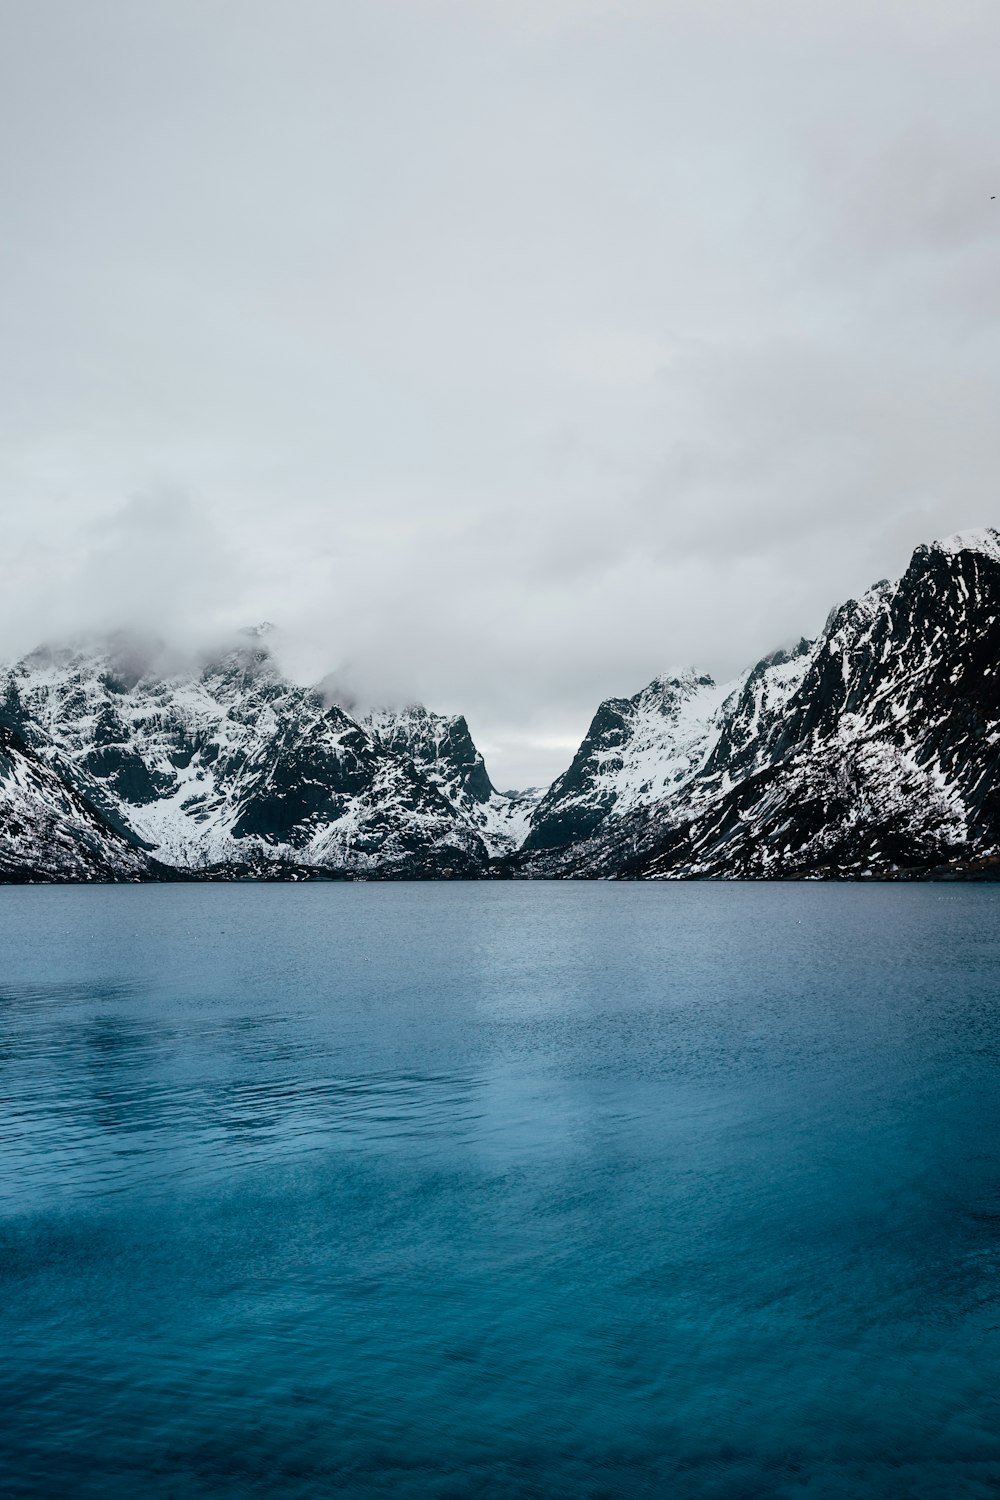 corpo de água azul calmo e montanha coberta de neve sob nuvens cinzentas durante o dia